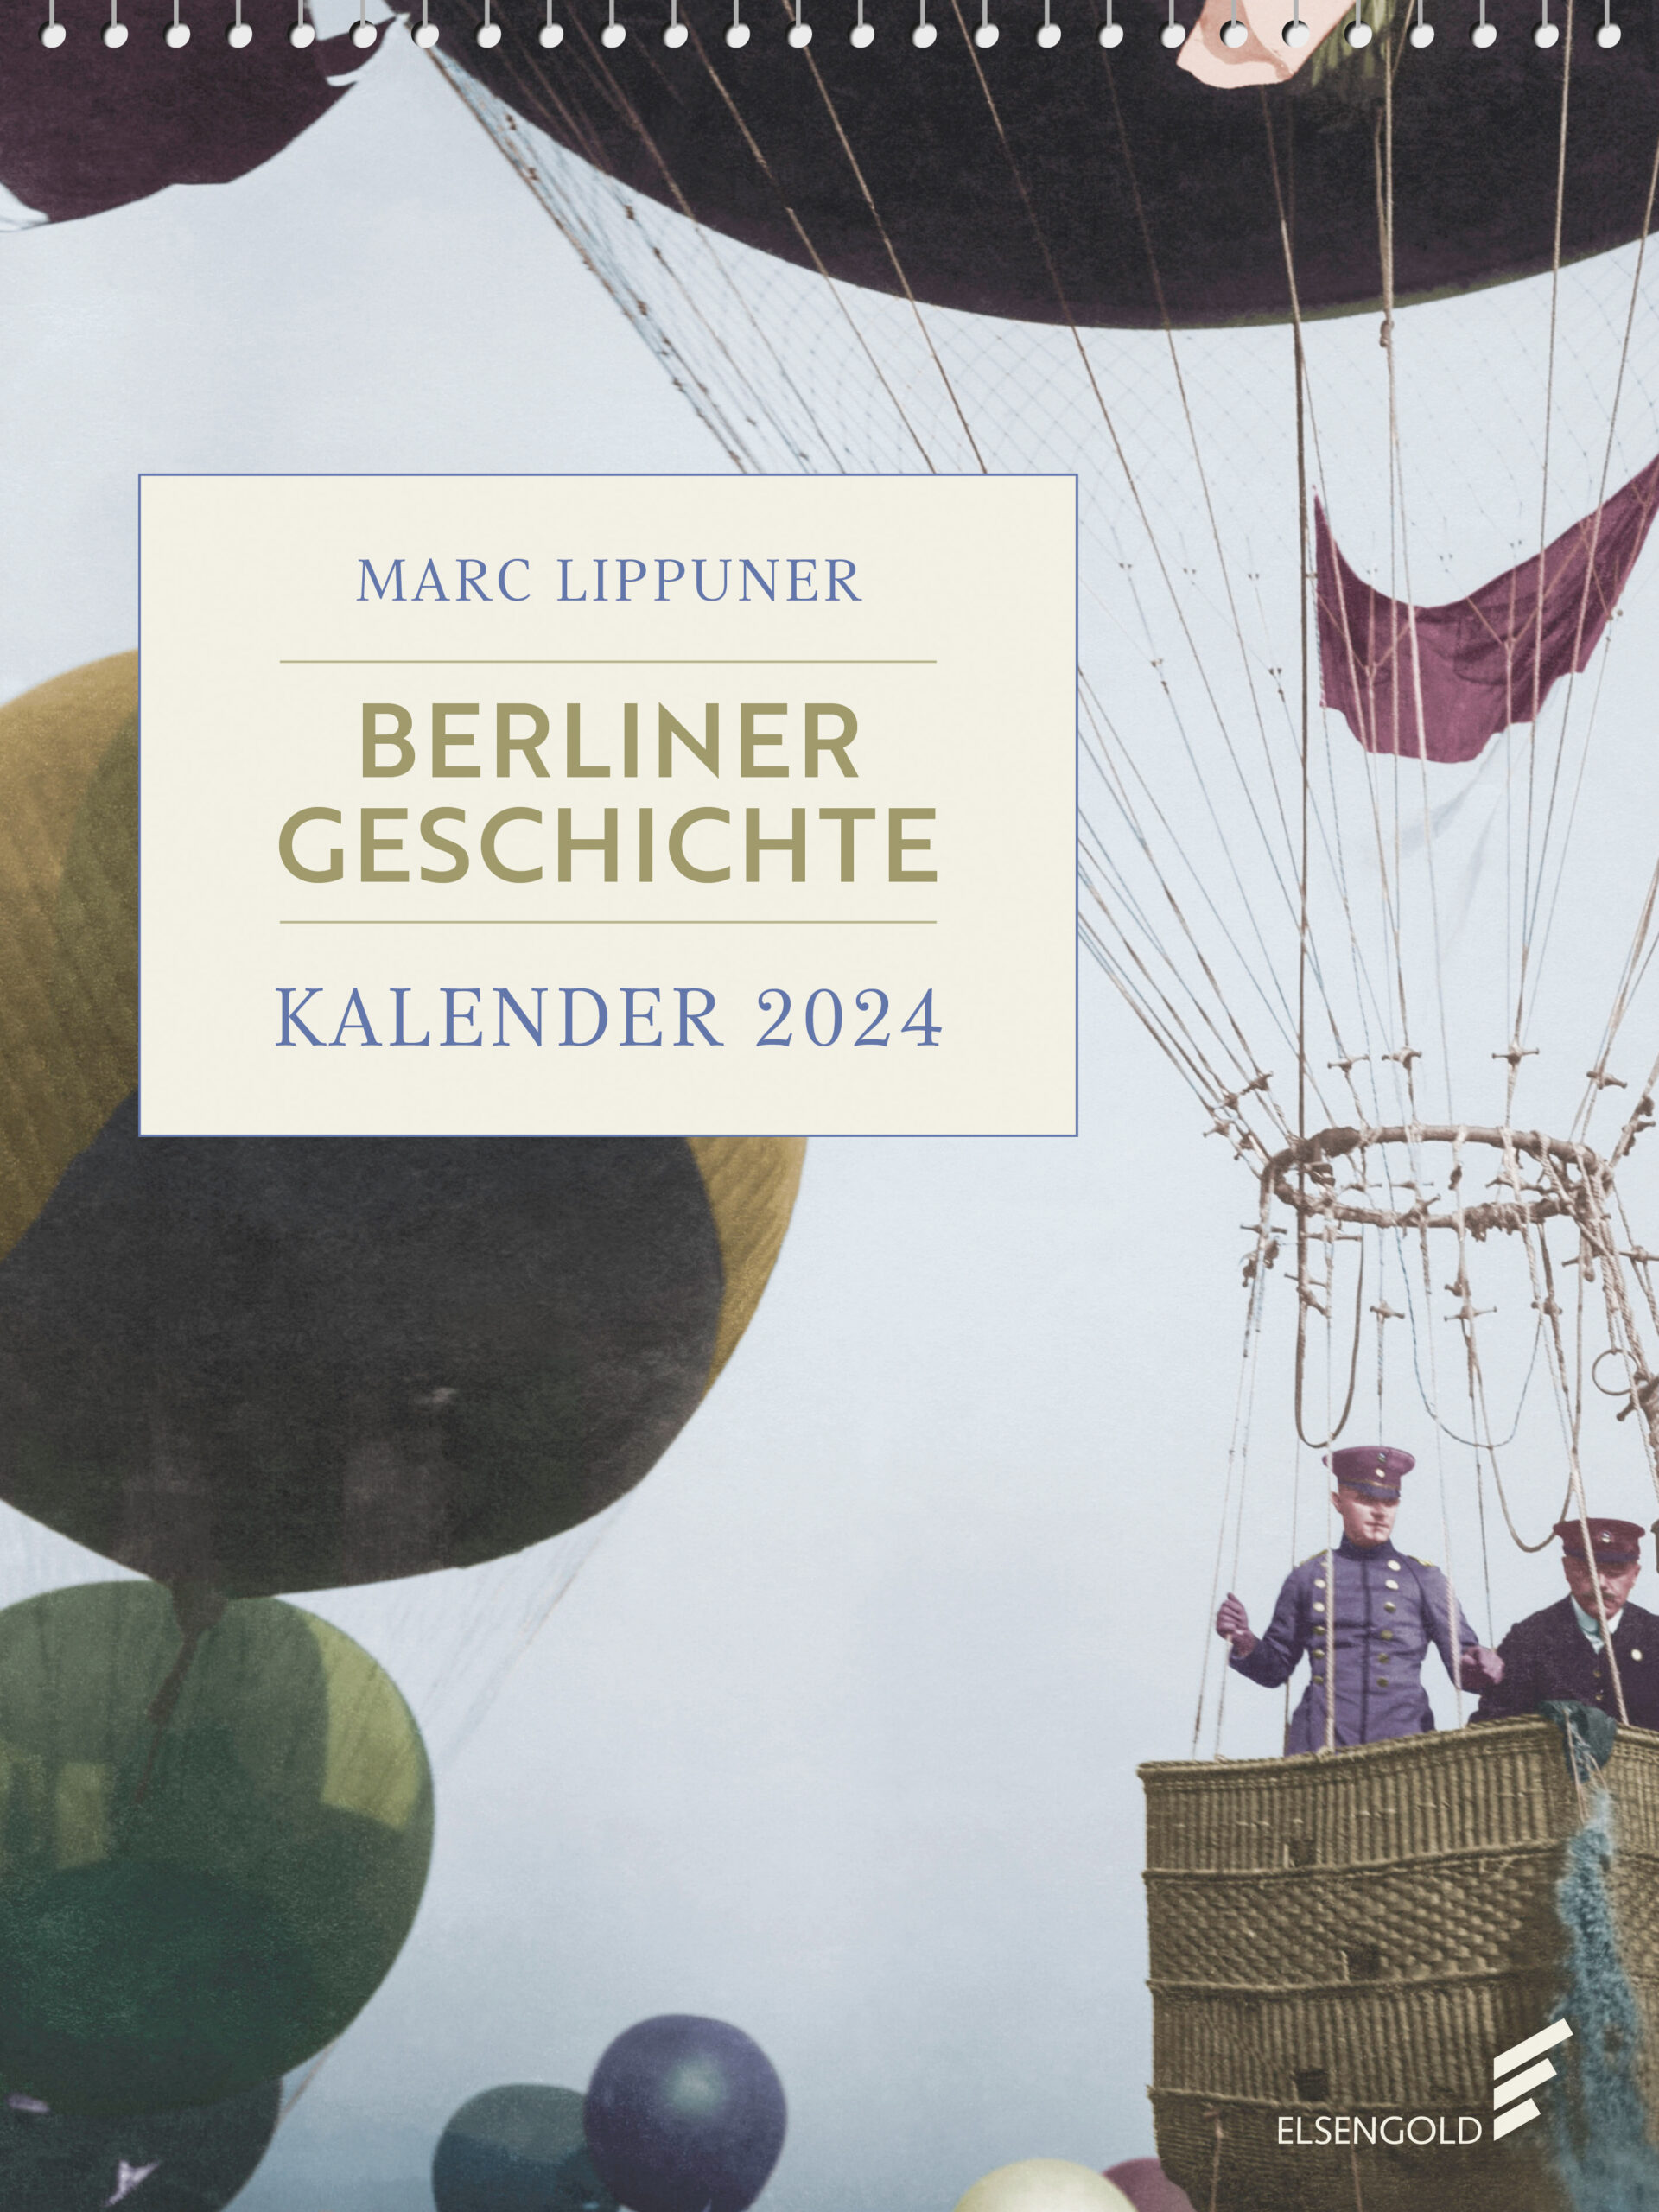 Das Bild zeigt das Cover des Kalenders Berliner Geschichte 2024.